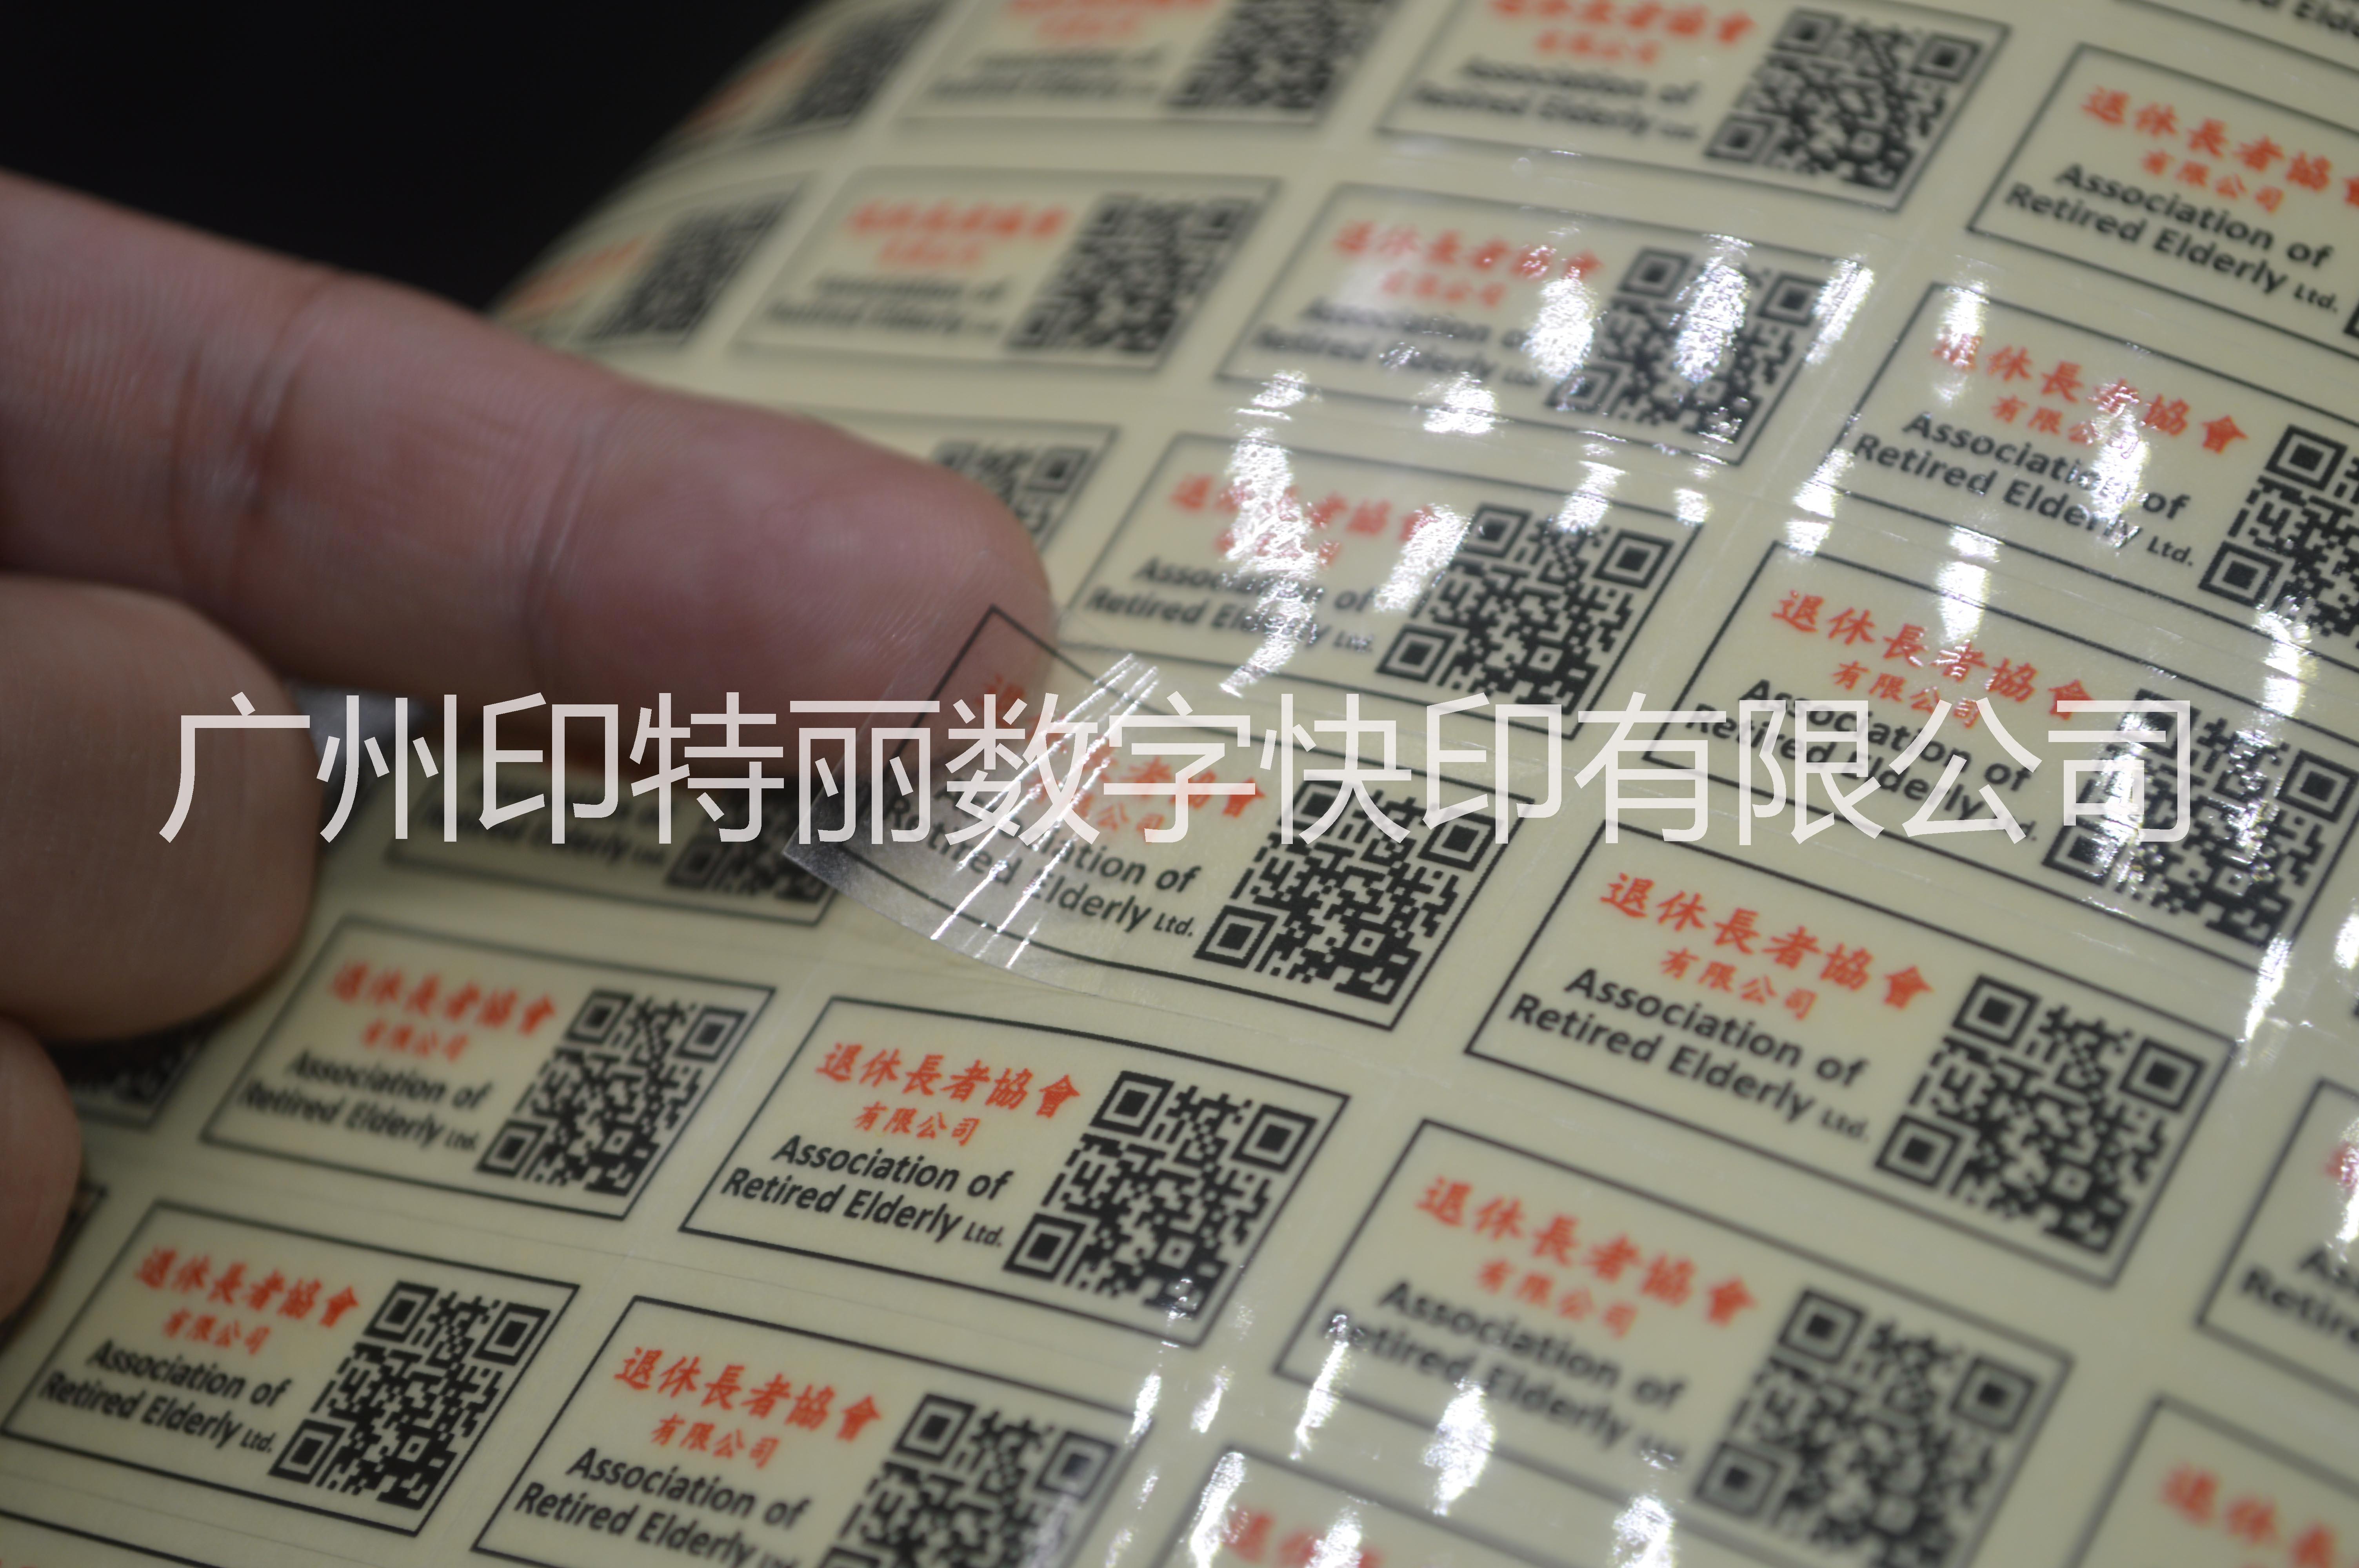 广州不干胶可变数据印刷厂家|不干胶印刷|不干胶印刷联系电话